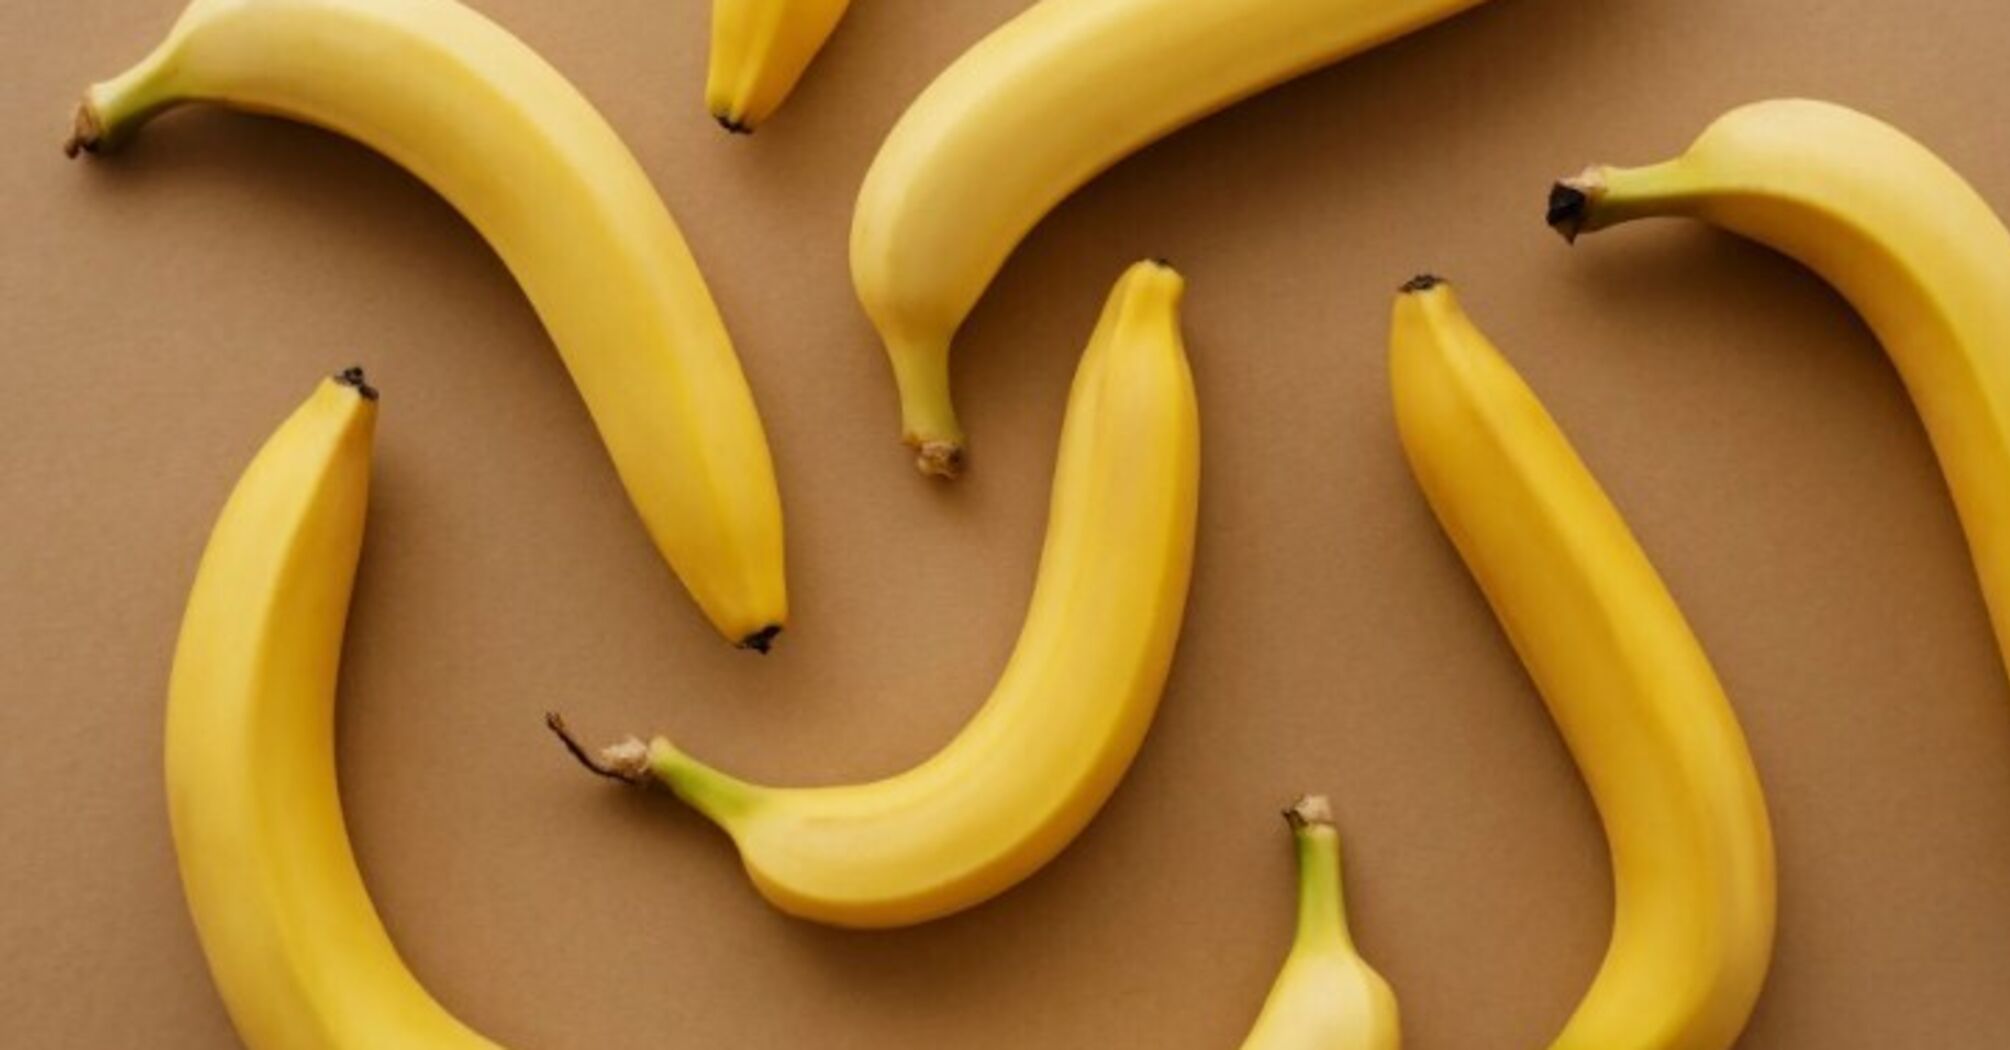 Jak przechowywać banany w domu